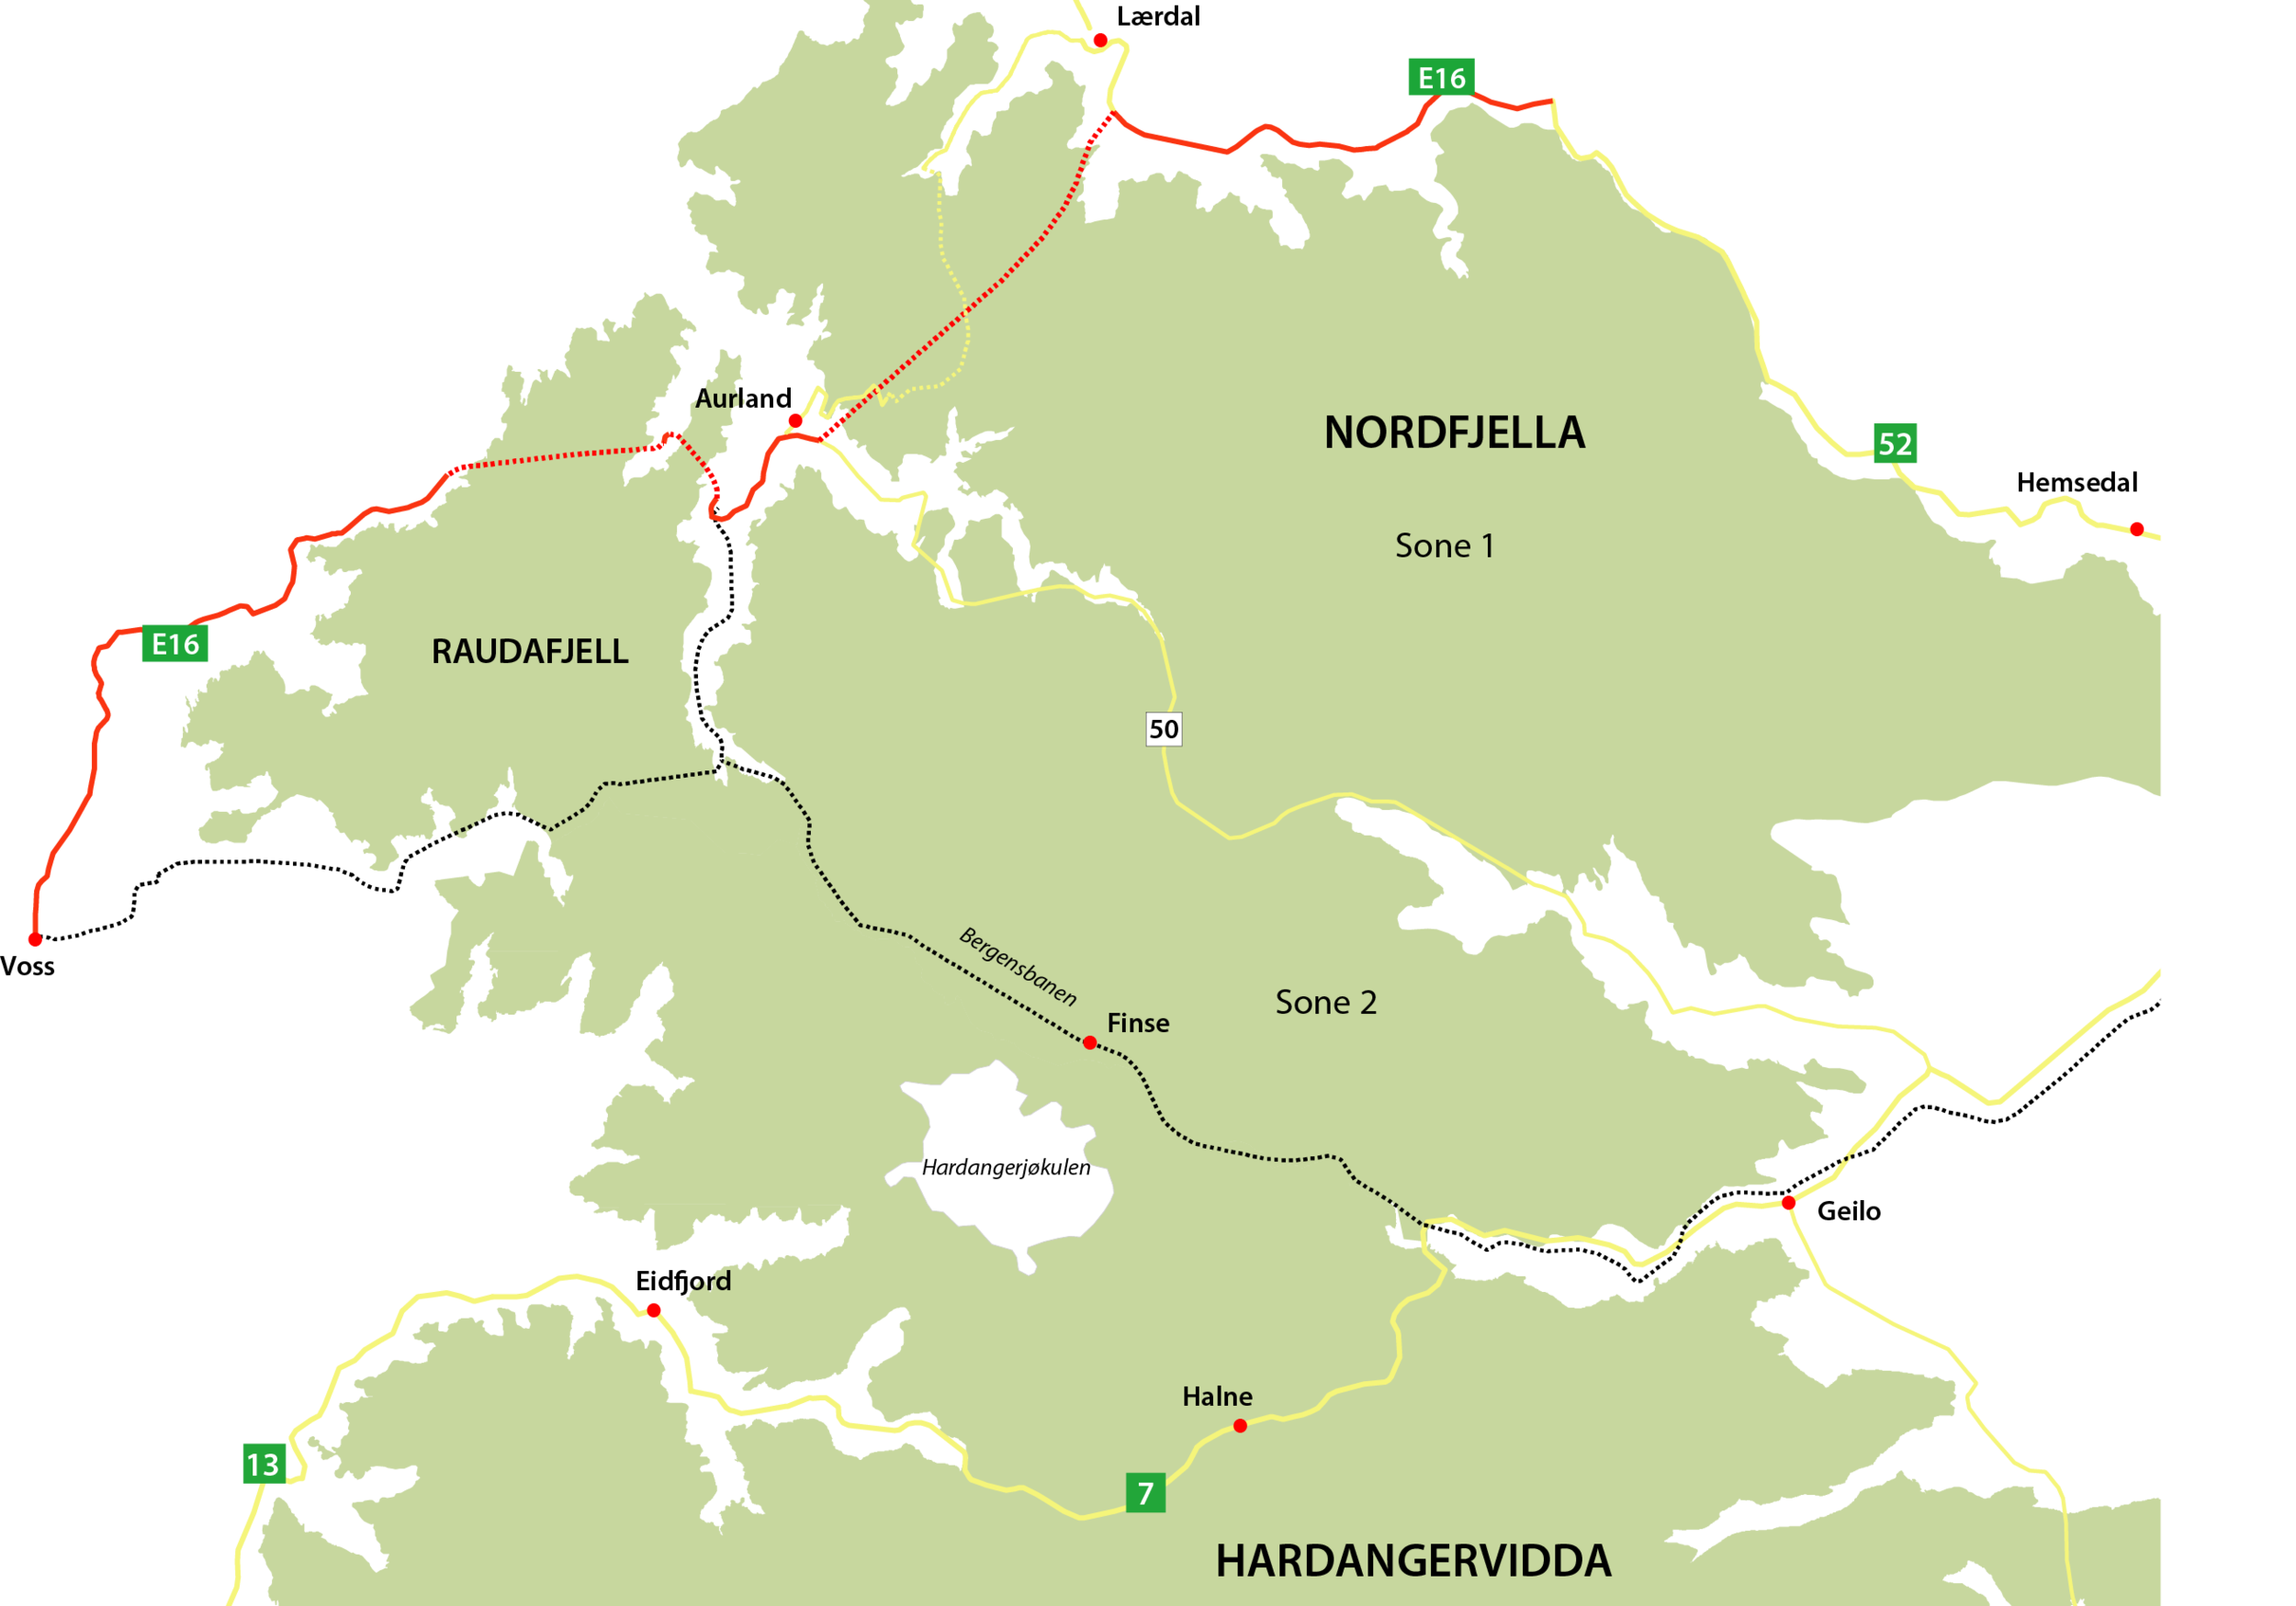 Grovt kart over området som viser Raudafjell, Nordfjella og Hardangervidda. Områdets avgrensning i kartet kommer fra Norsk villreinsenters leveområdekartlegging i forkant av den regionale planen for Nordfjella. Det omsøkte arealet avviker noe fra de…